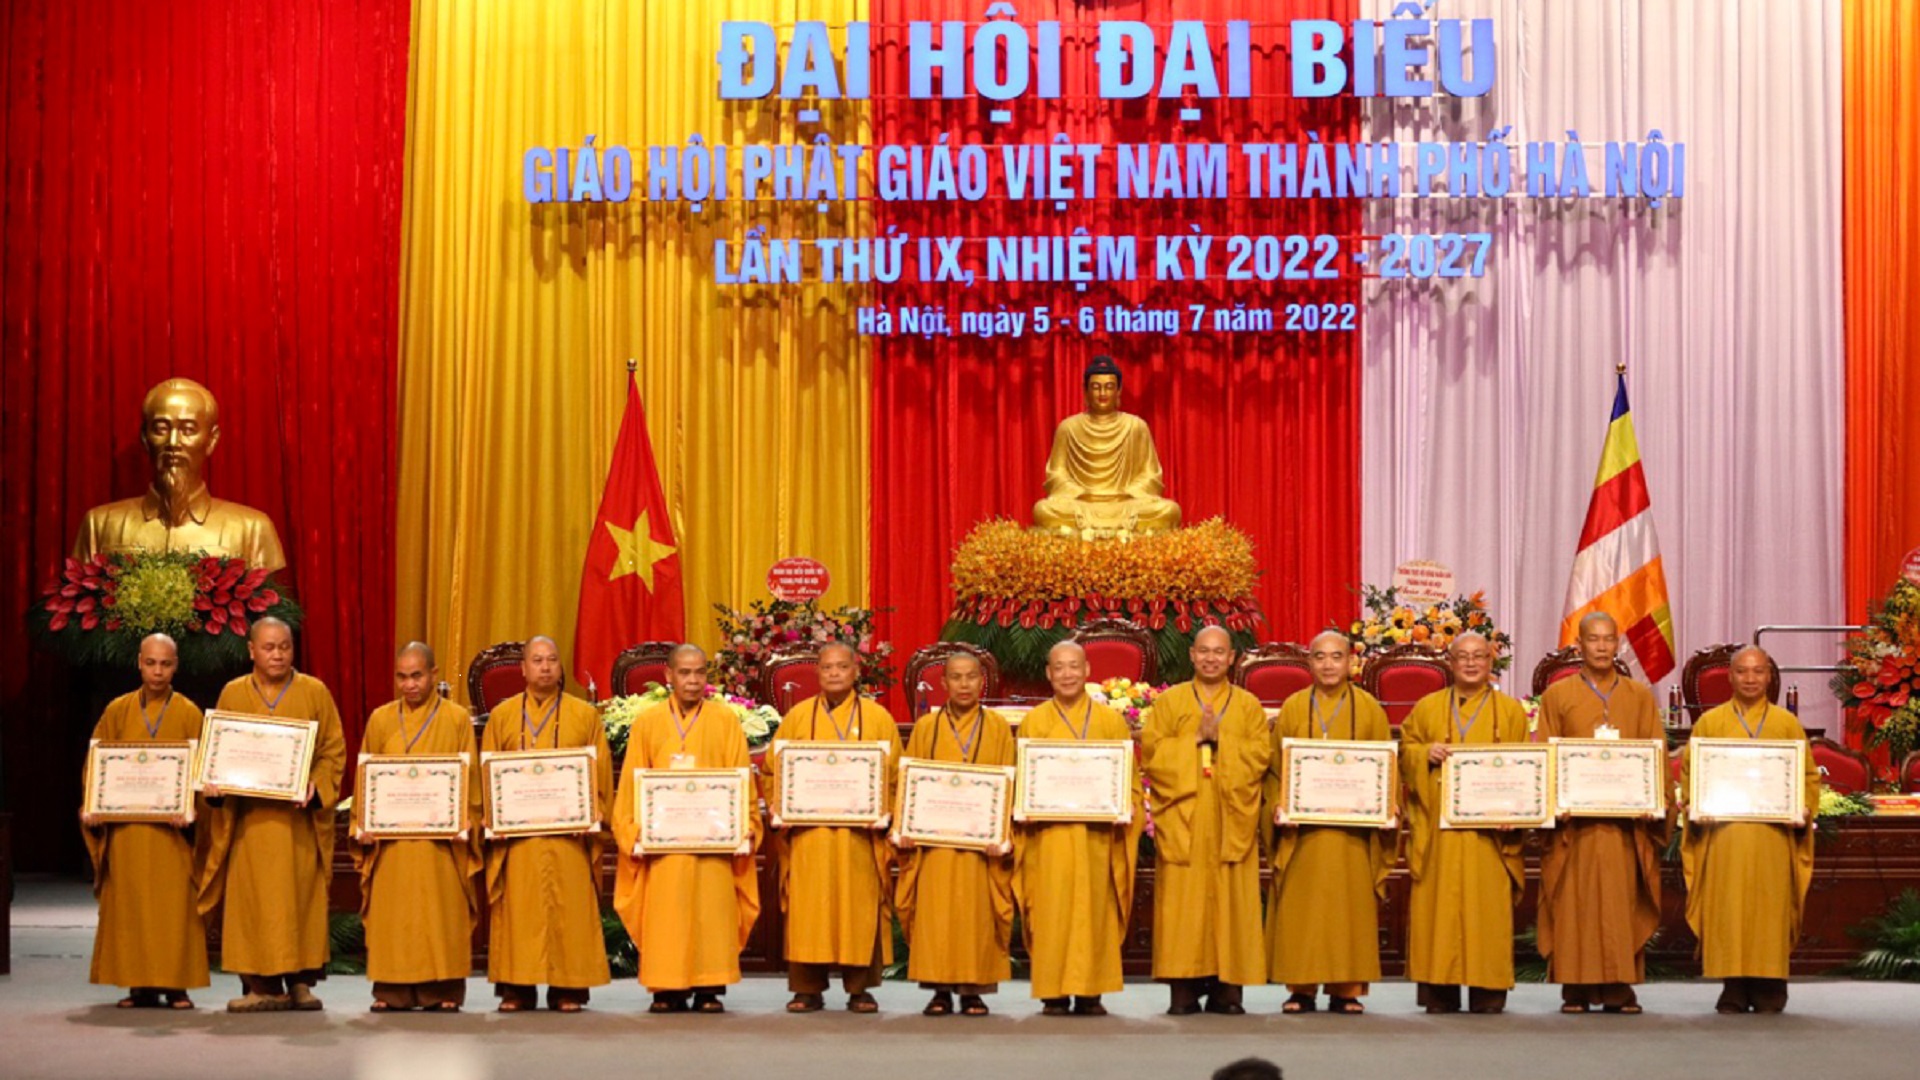 Hà Nội: Chính thức diễn ra Đại hội Đại biểu Giáo hội Phật giáo Việt Nam Thành phố Hà Nội lần thứ IX, nhiệm kỳ 2022-2027.